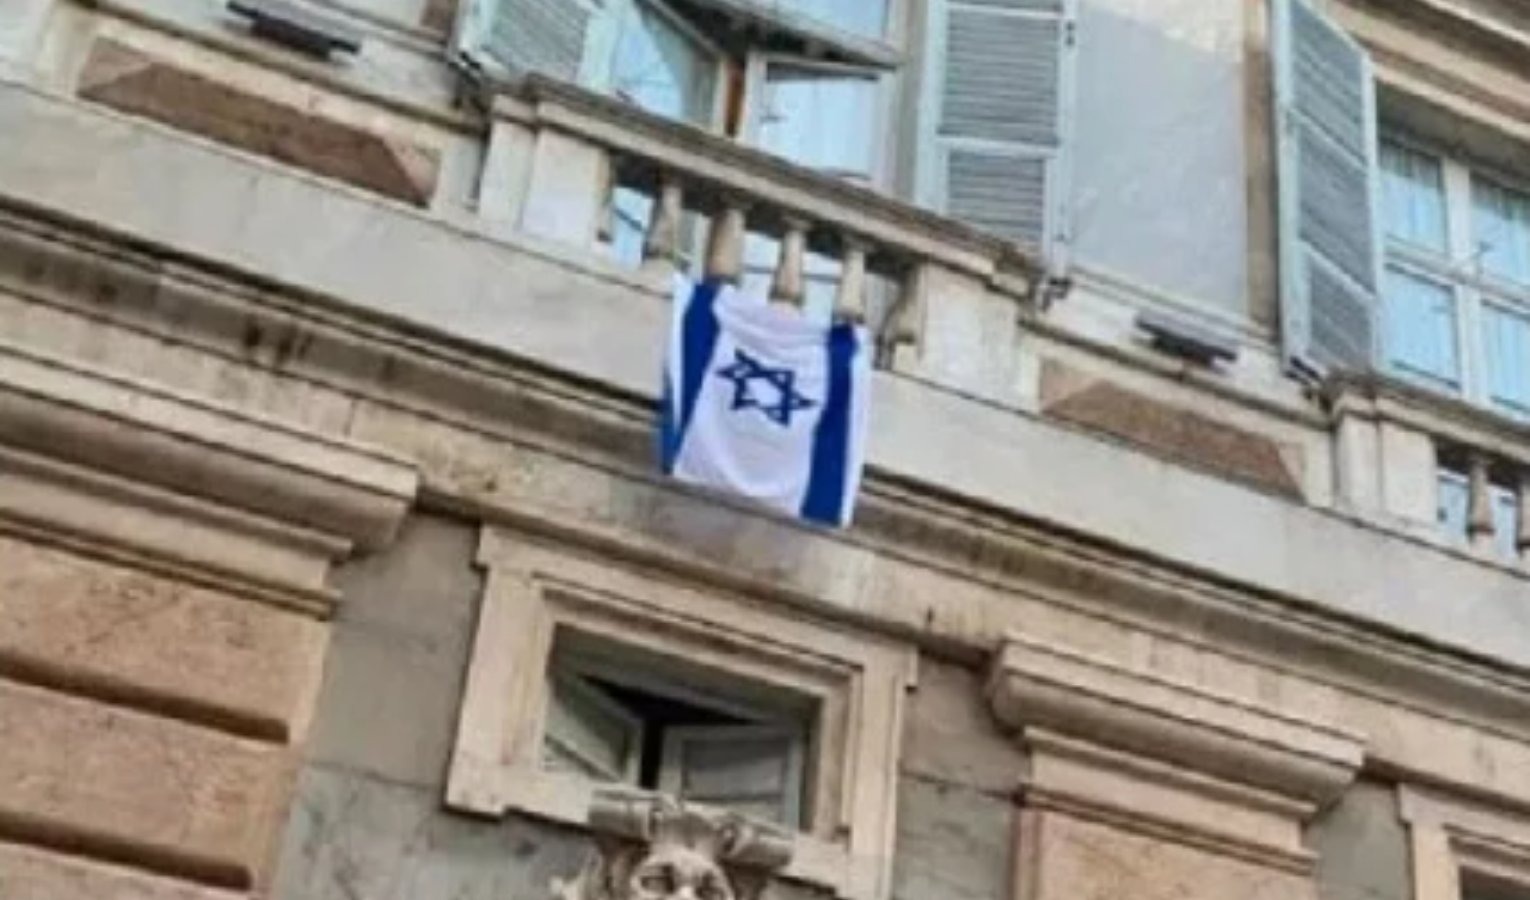 Bandiera Israele, la sinistra chiede la rimozione dal palazzo del comune di Genova